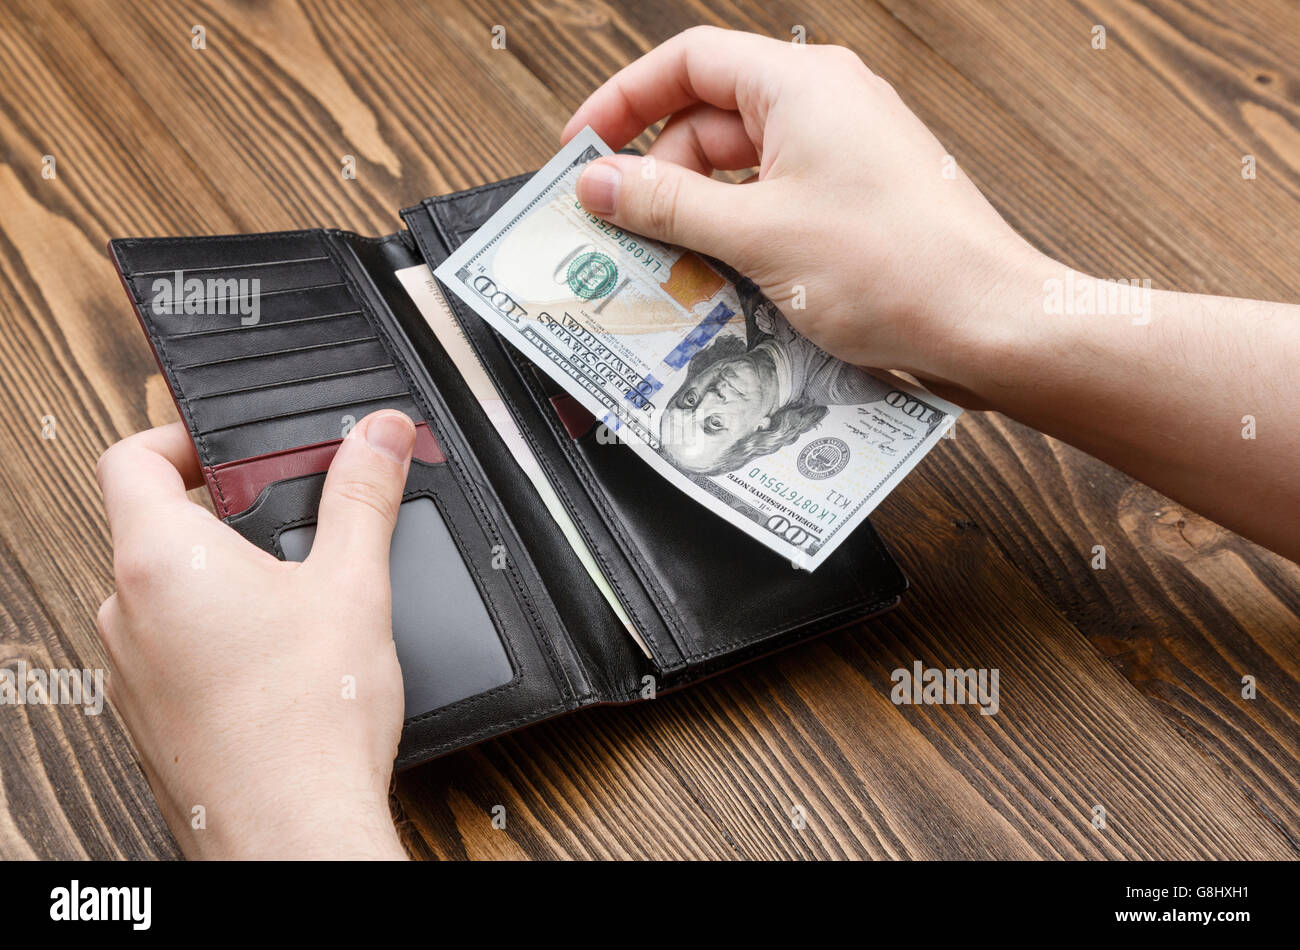 L uomo è messa 100 dollar banconota in un nero portafoglio in pelle su legno scuro dello sfondo. Immagine ravvicinata di mani e portafoglio. Foto Stock